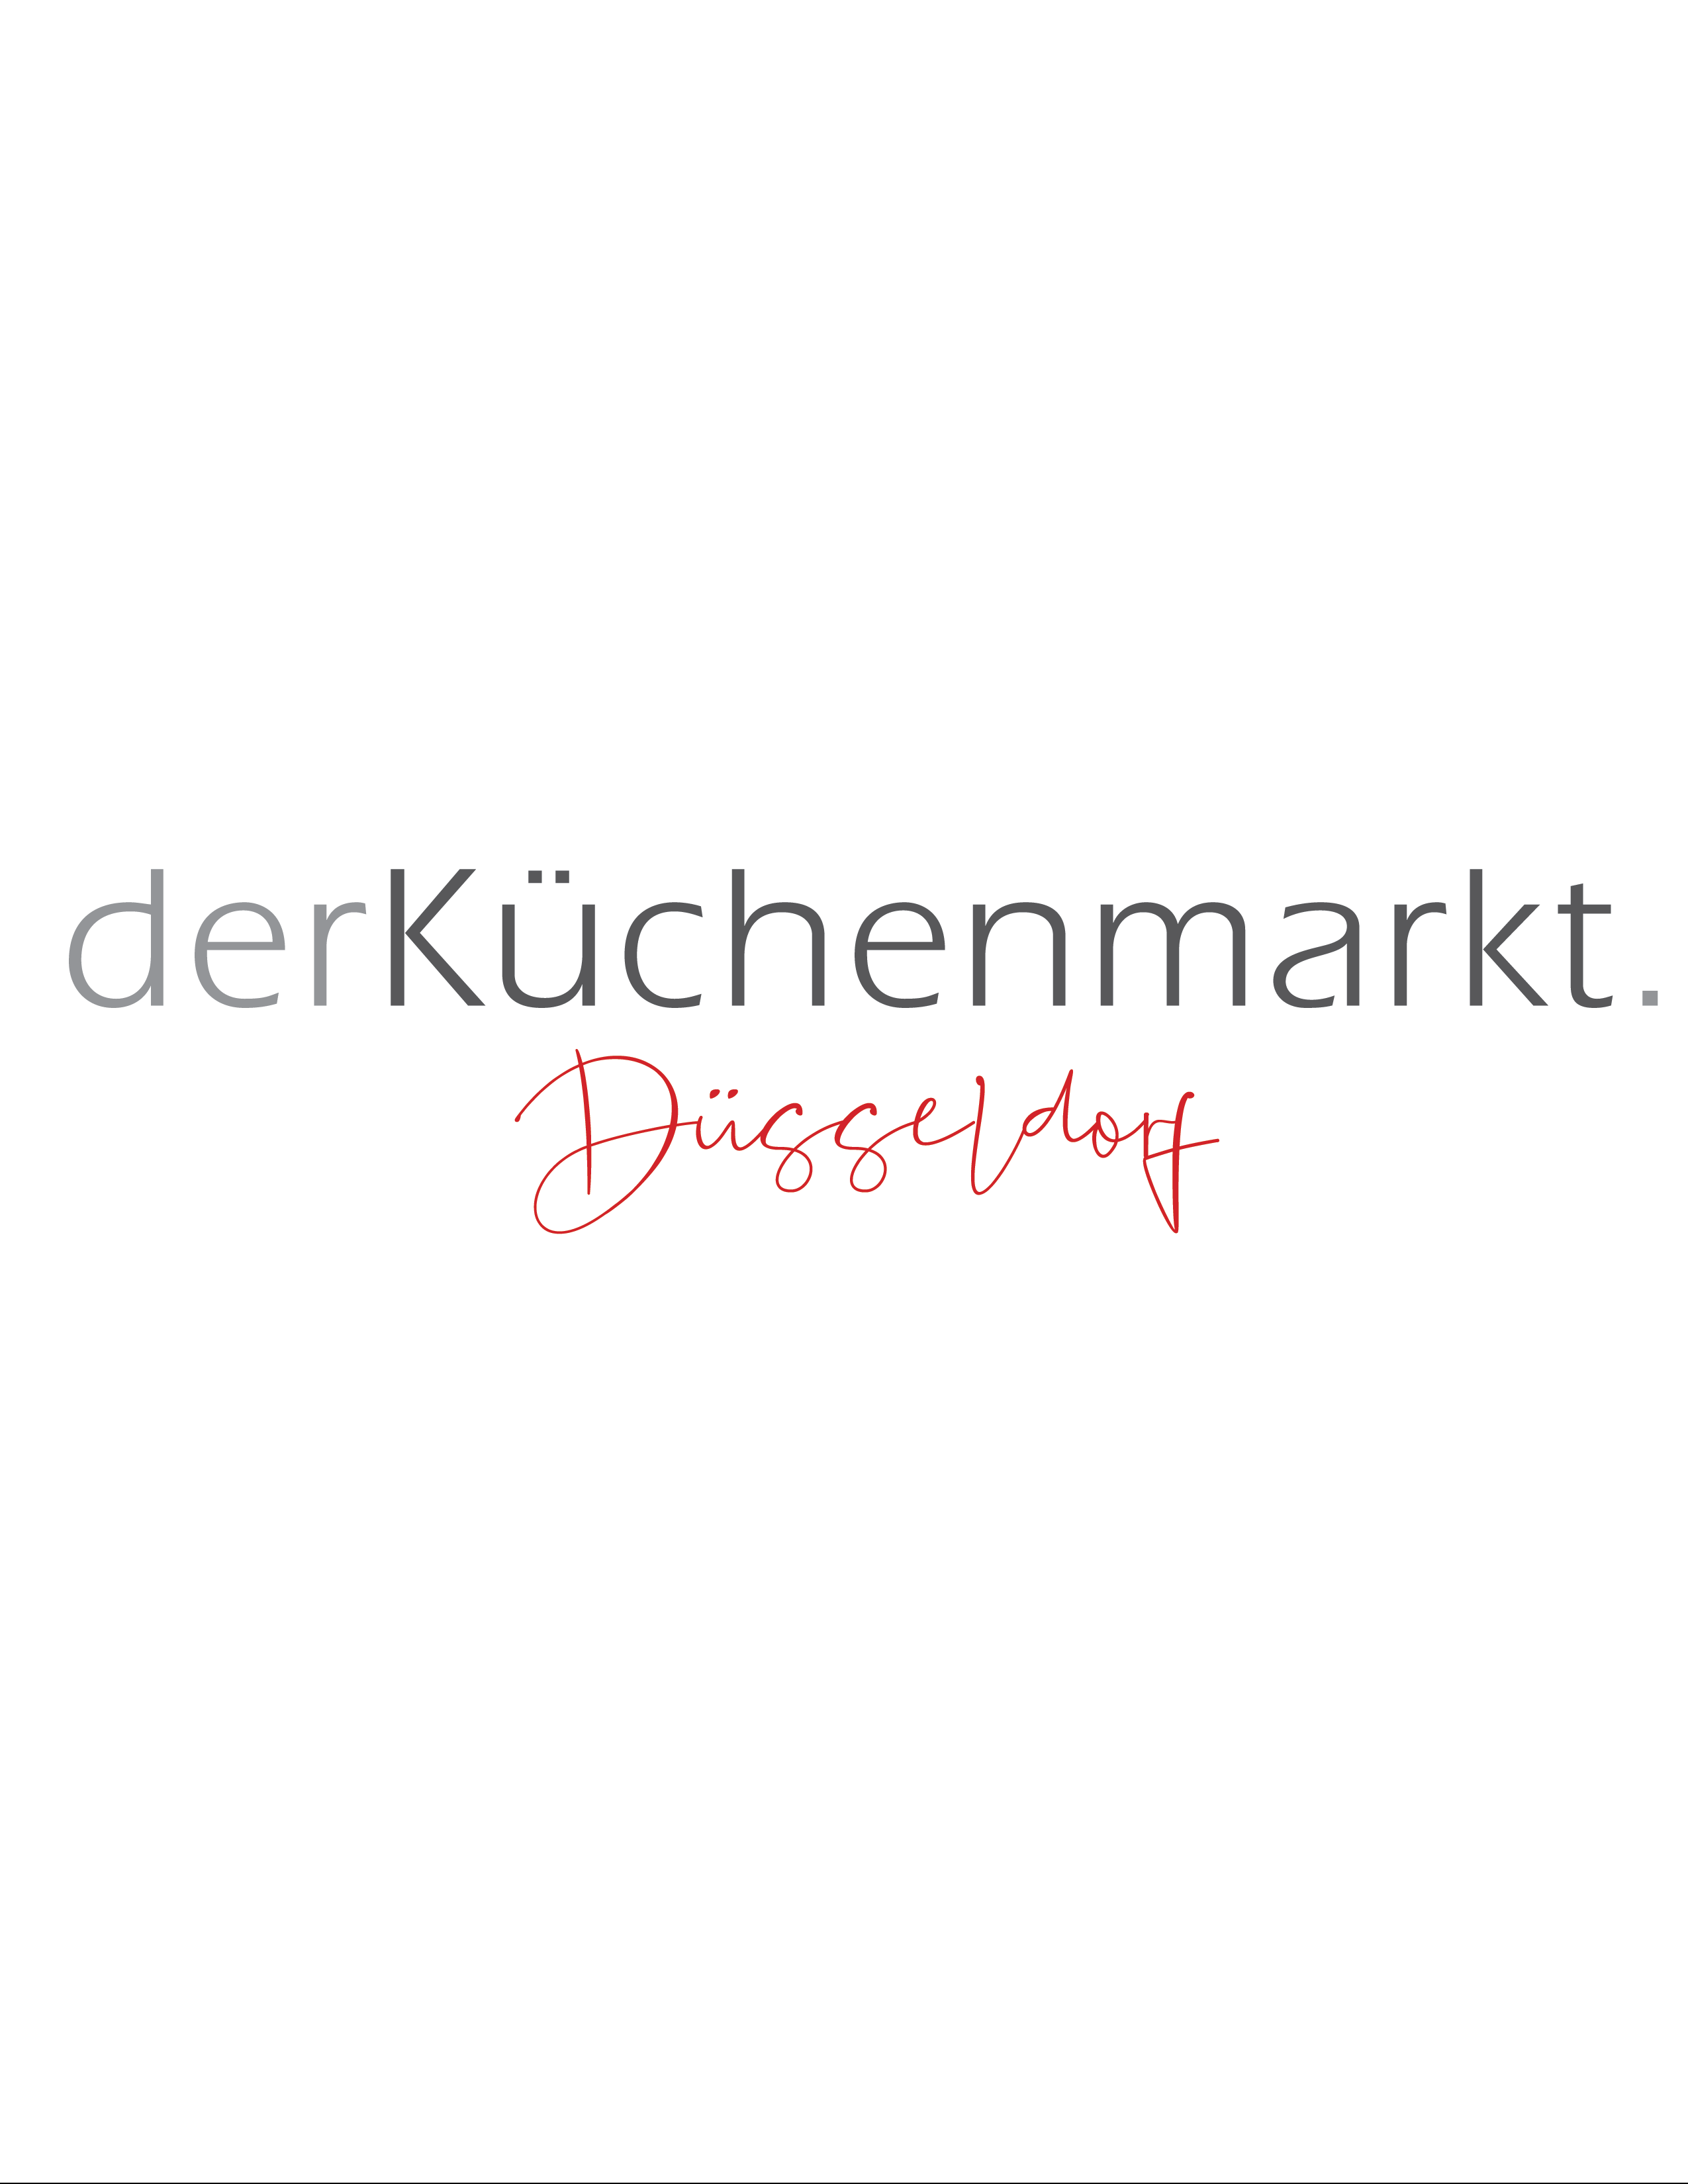 Der Küchenmarkt Düsseldorf